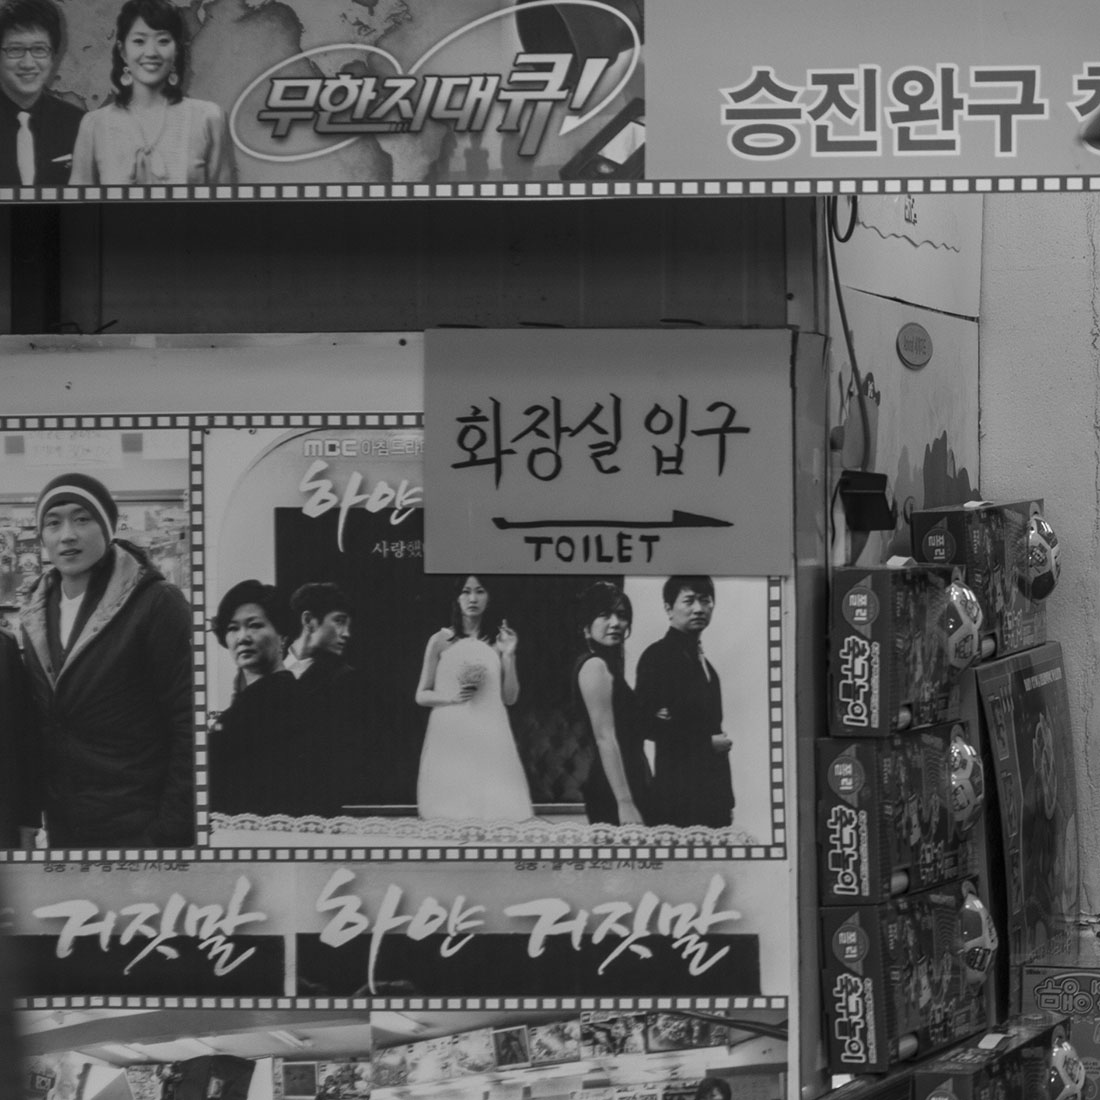 Publicité au mur, magasin de jouets coréen, 무한지대큐, 승진완구, jouets en promotion